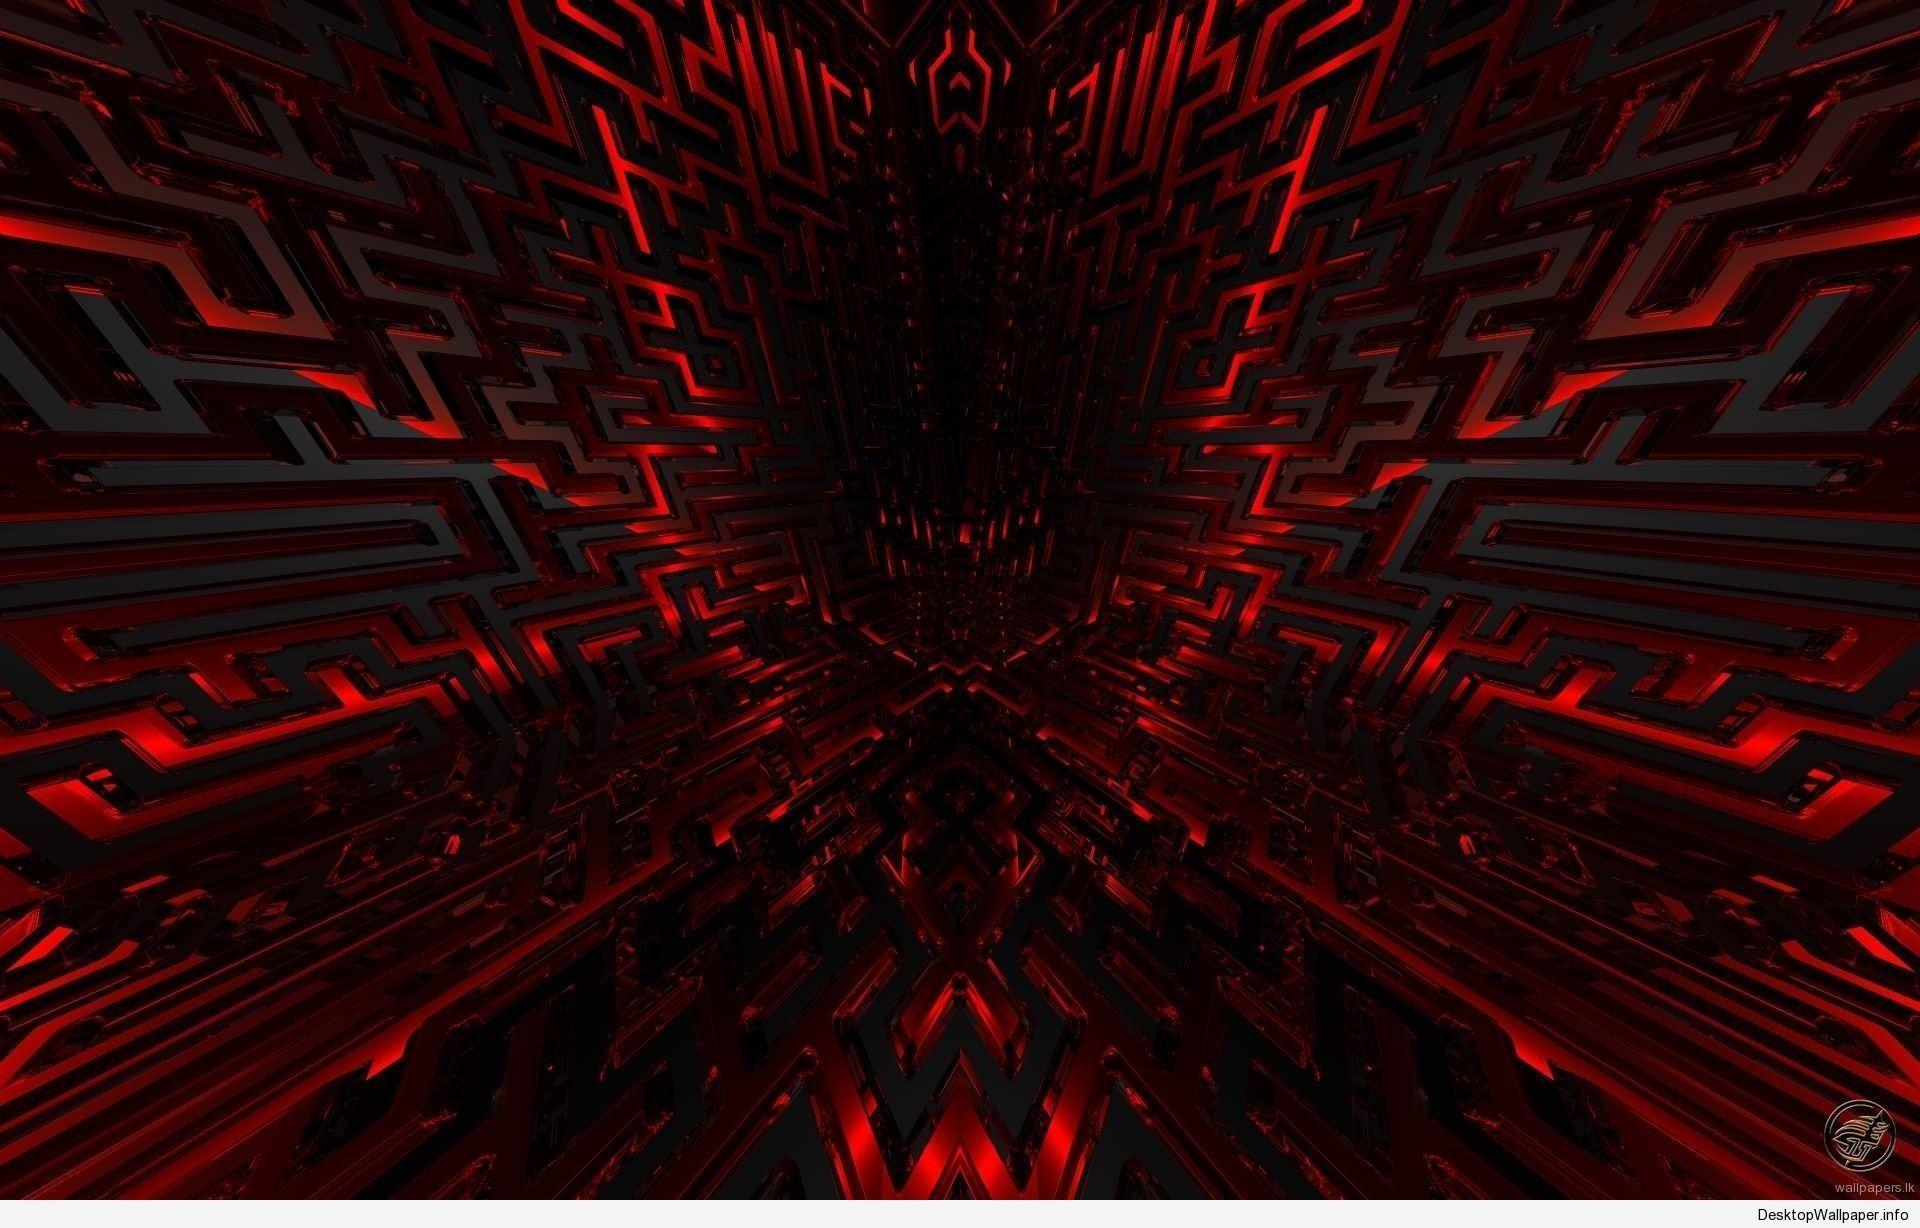 Màn hình nền máy tính màu đỏ đậm - Hang Nén: Làm mới màn hình nền máy tính của bạn với màu sắc đỏ đậm đầy năng lượng từ Hang Nén. Được thiết kế với độ phân giải cao và chất lượng tuyệt vời, mất ít thời gian để bạn đưa trải nghiệm thật hoàn hảo lên một tầm cao mới.